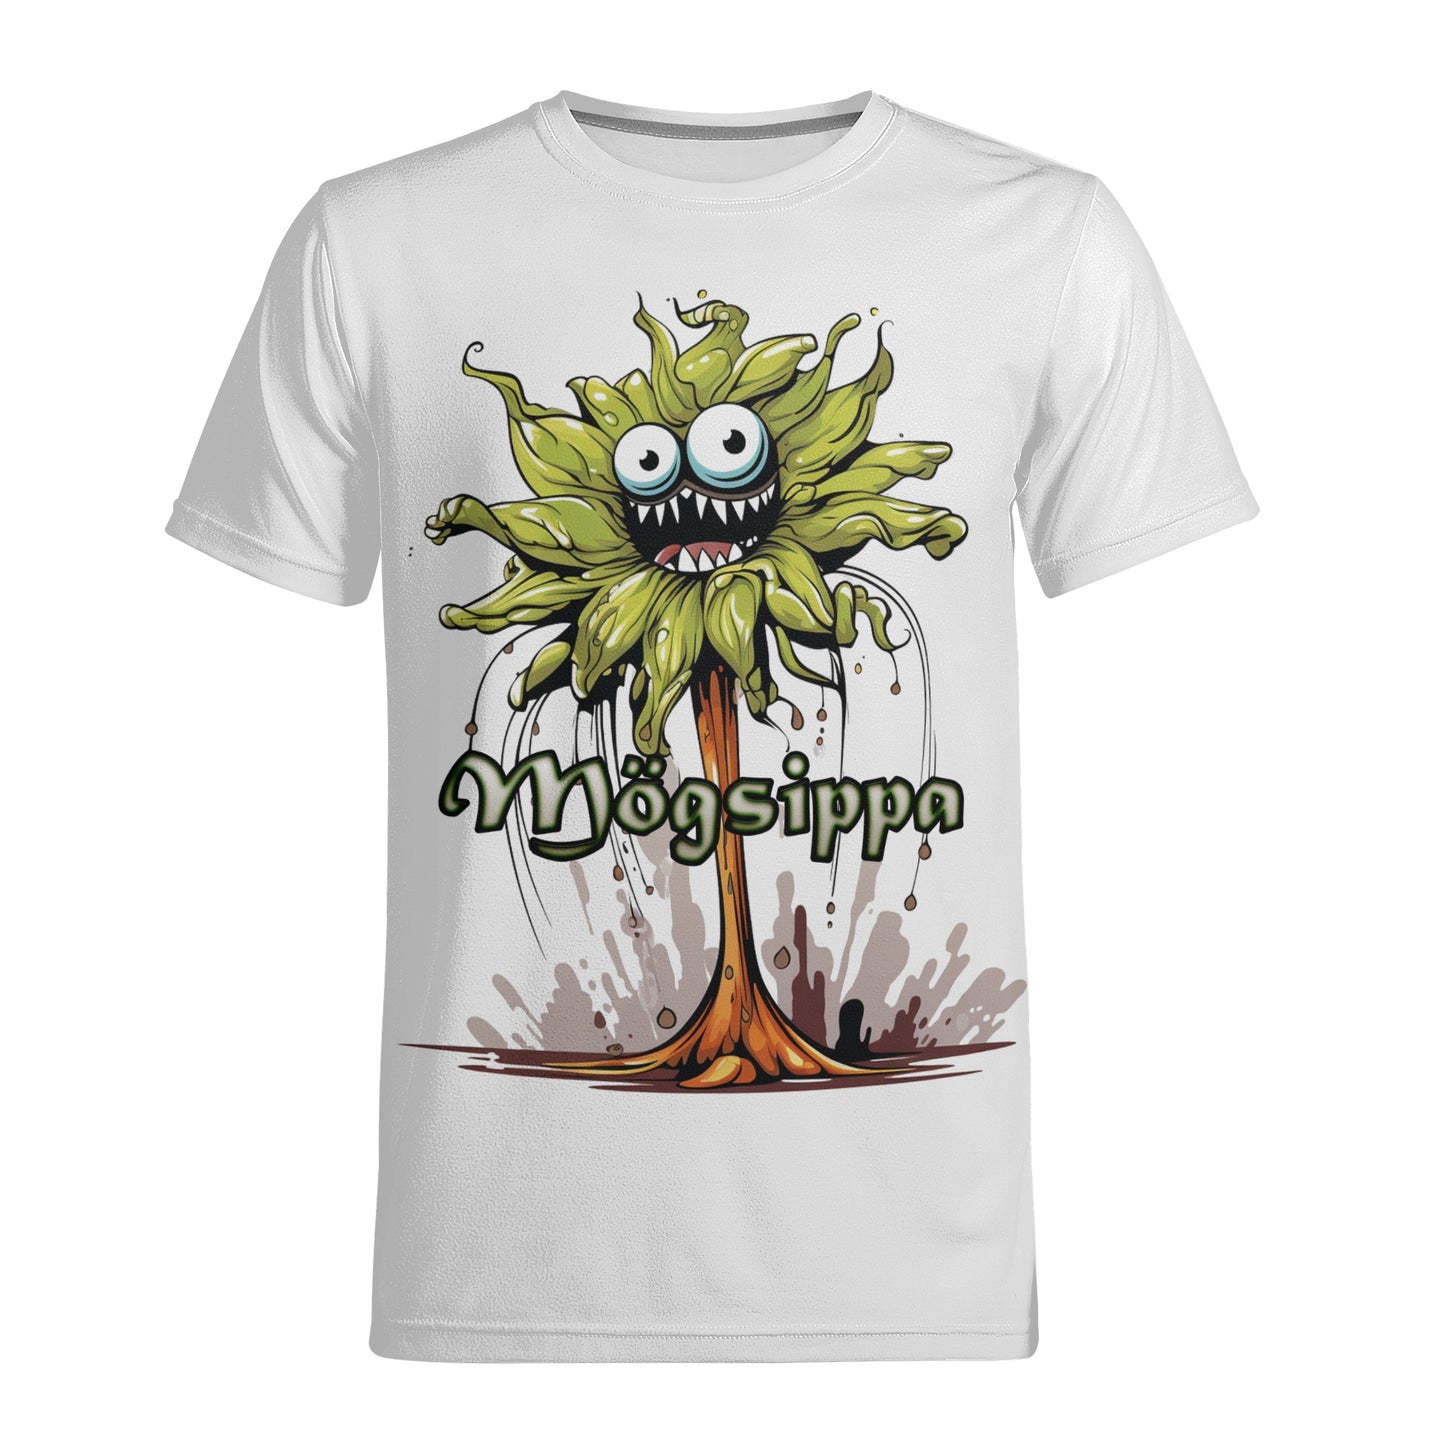 Neduz Mens Mögsippa T-shirt